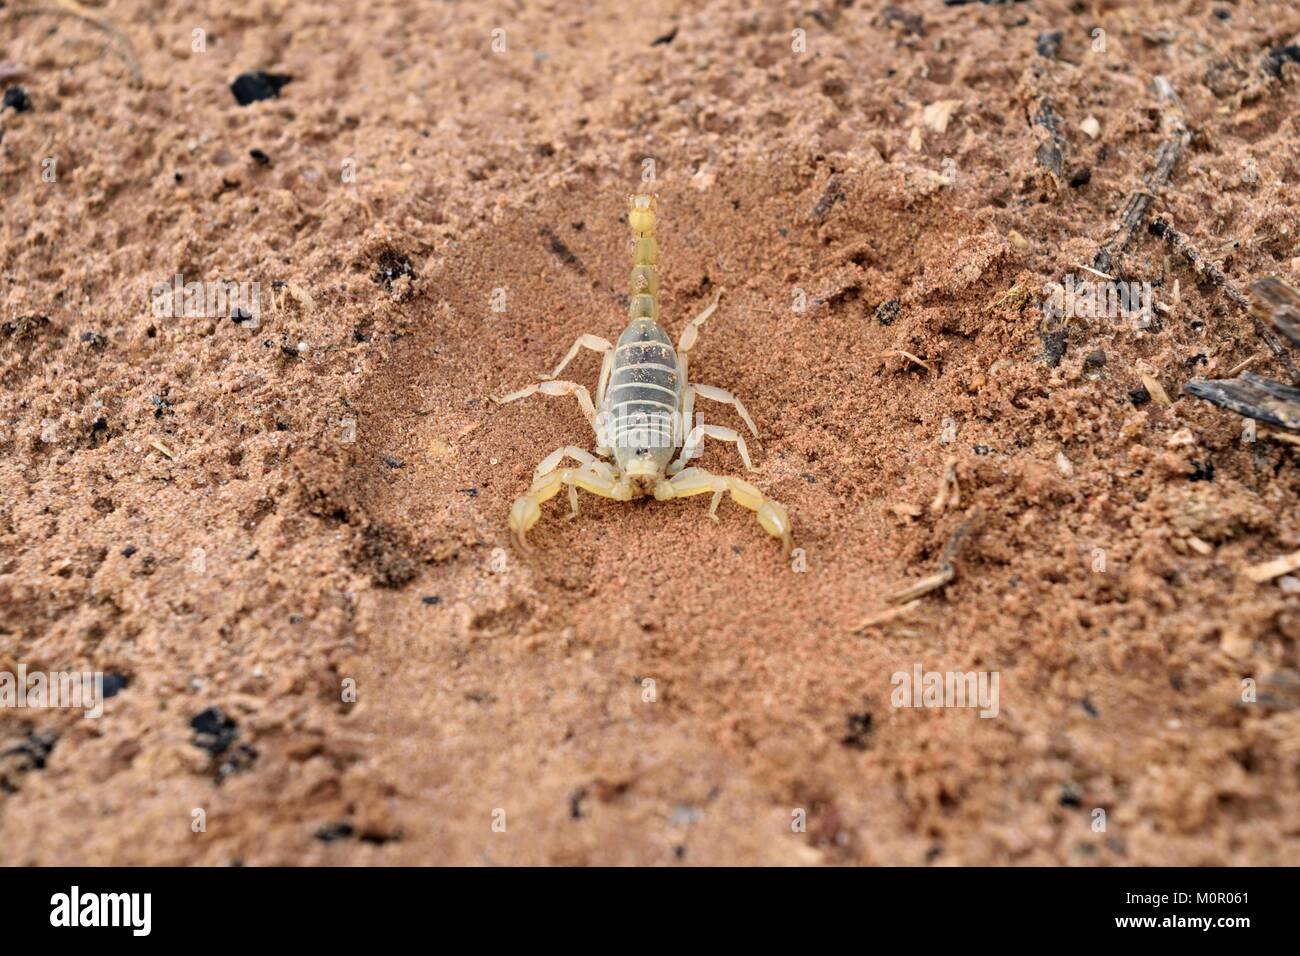 Arizona Bark Scorpion in the Utah Desert Sand Stock Photo